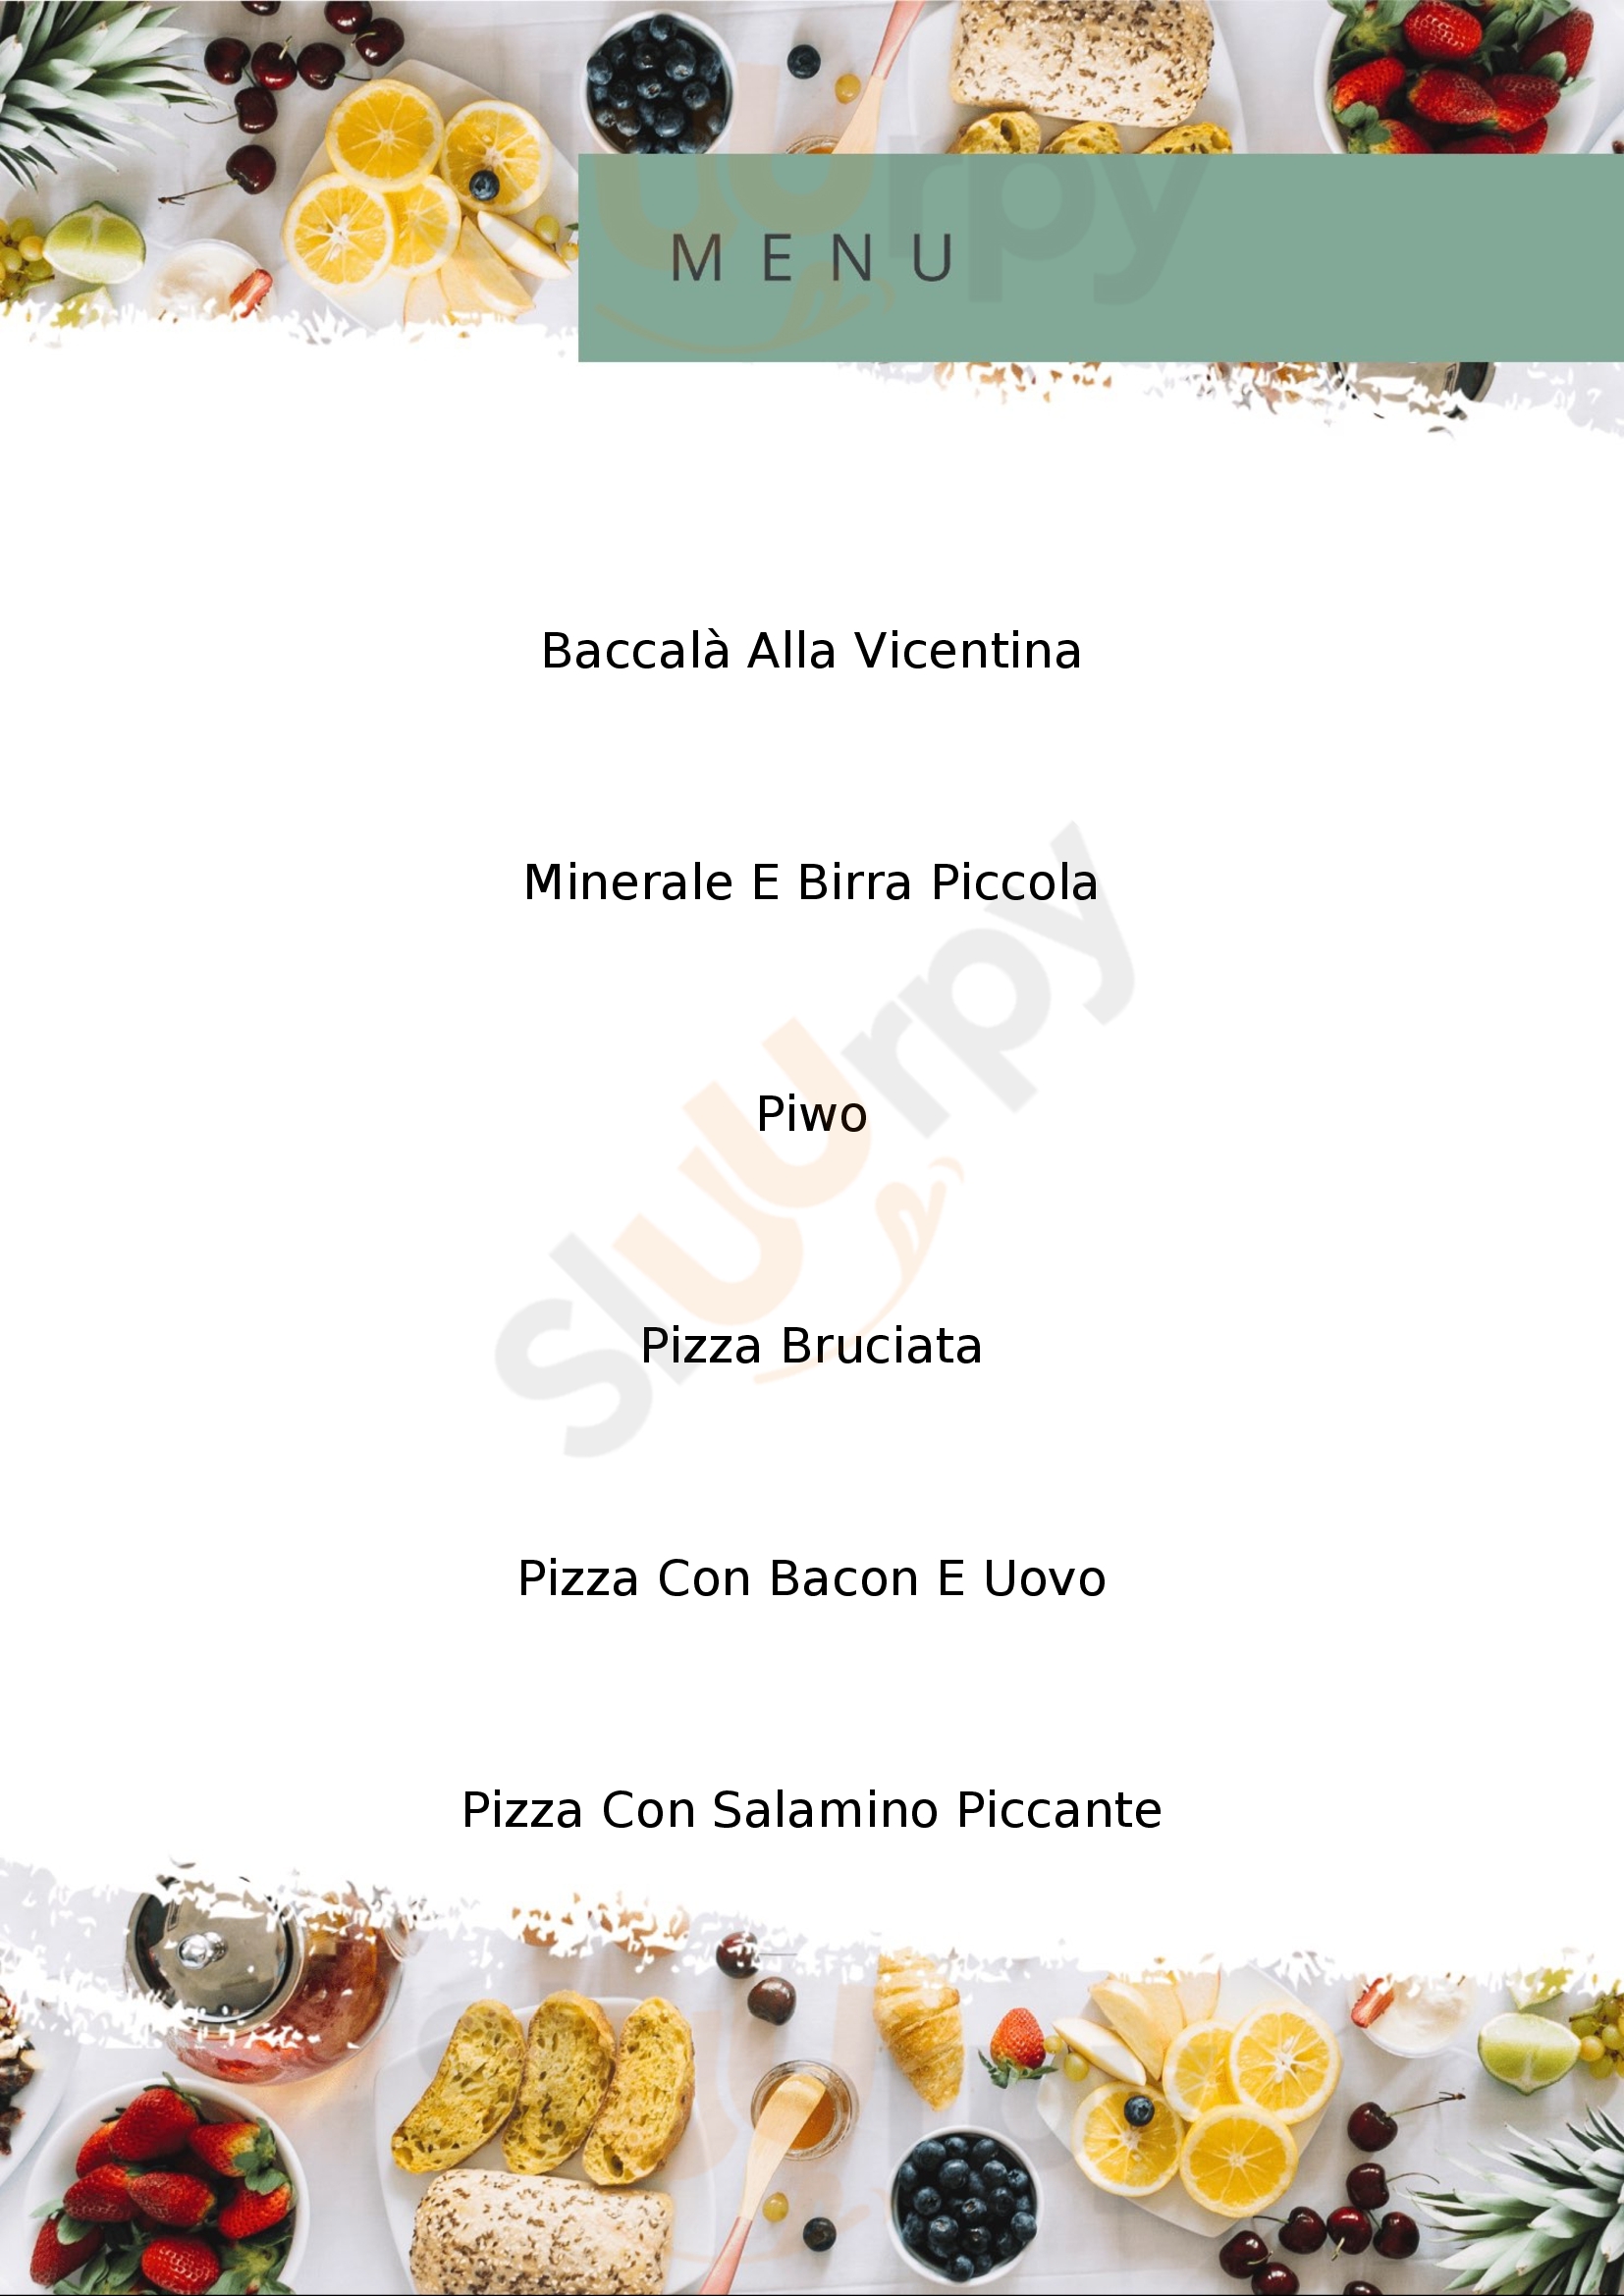 Pizzeria Pesa Mussolente menù 1 pagina